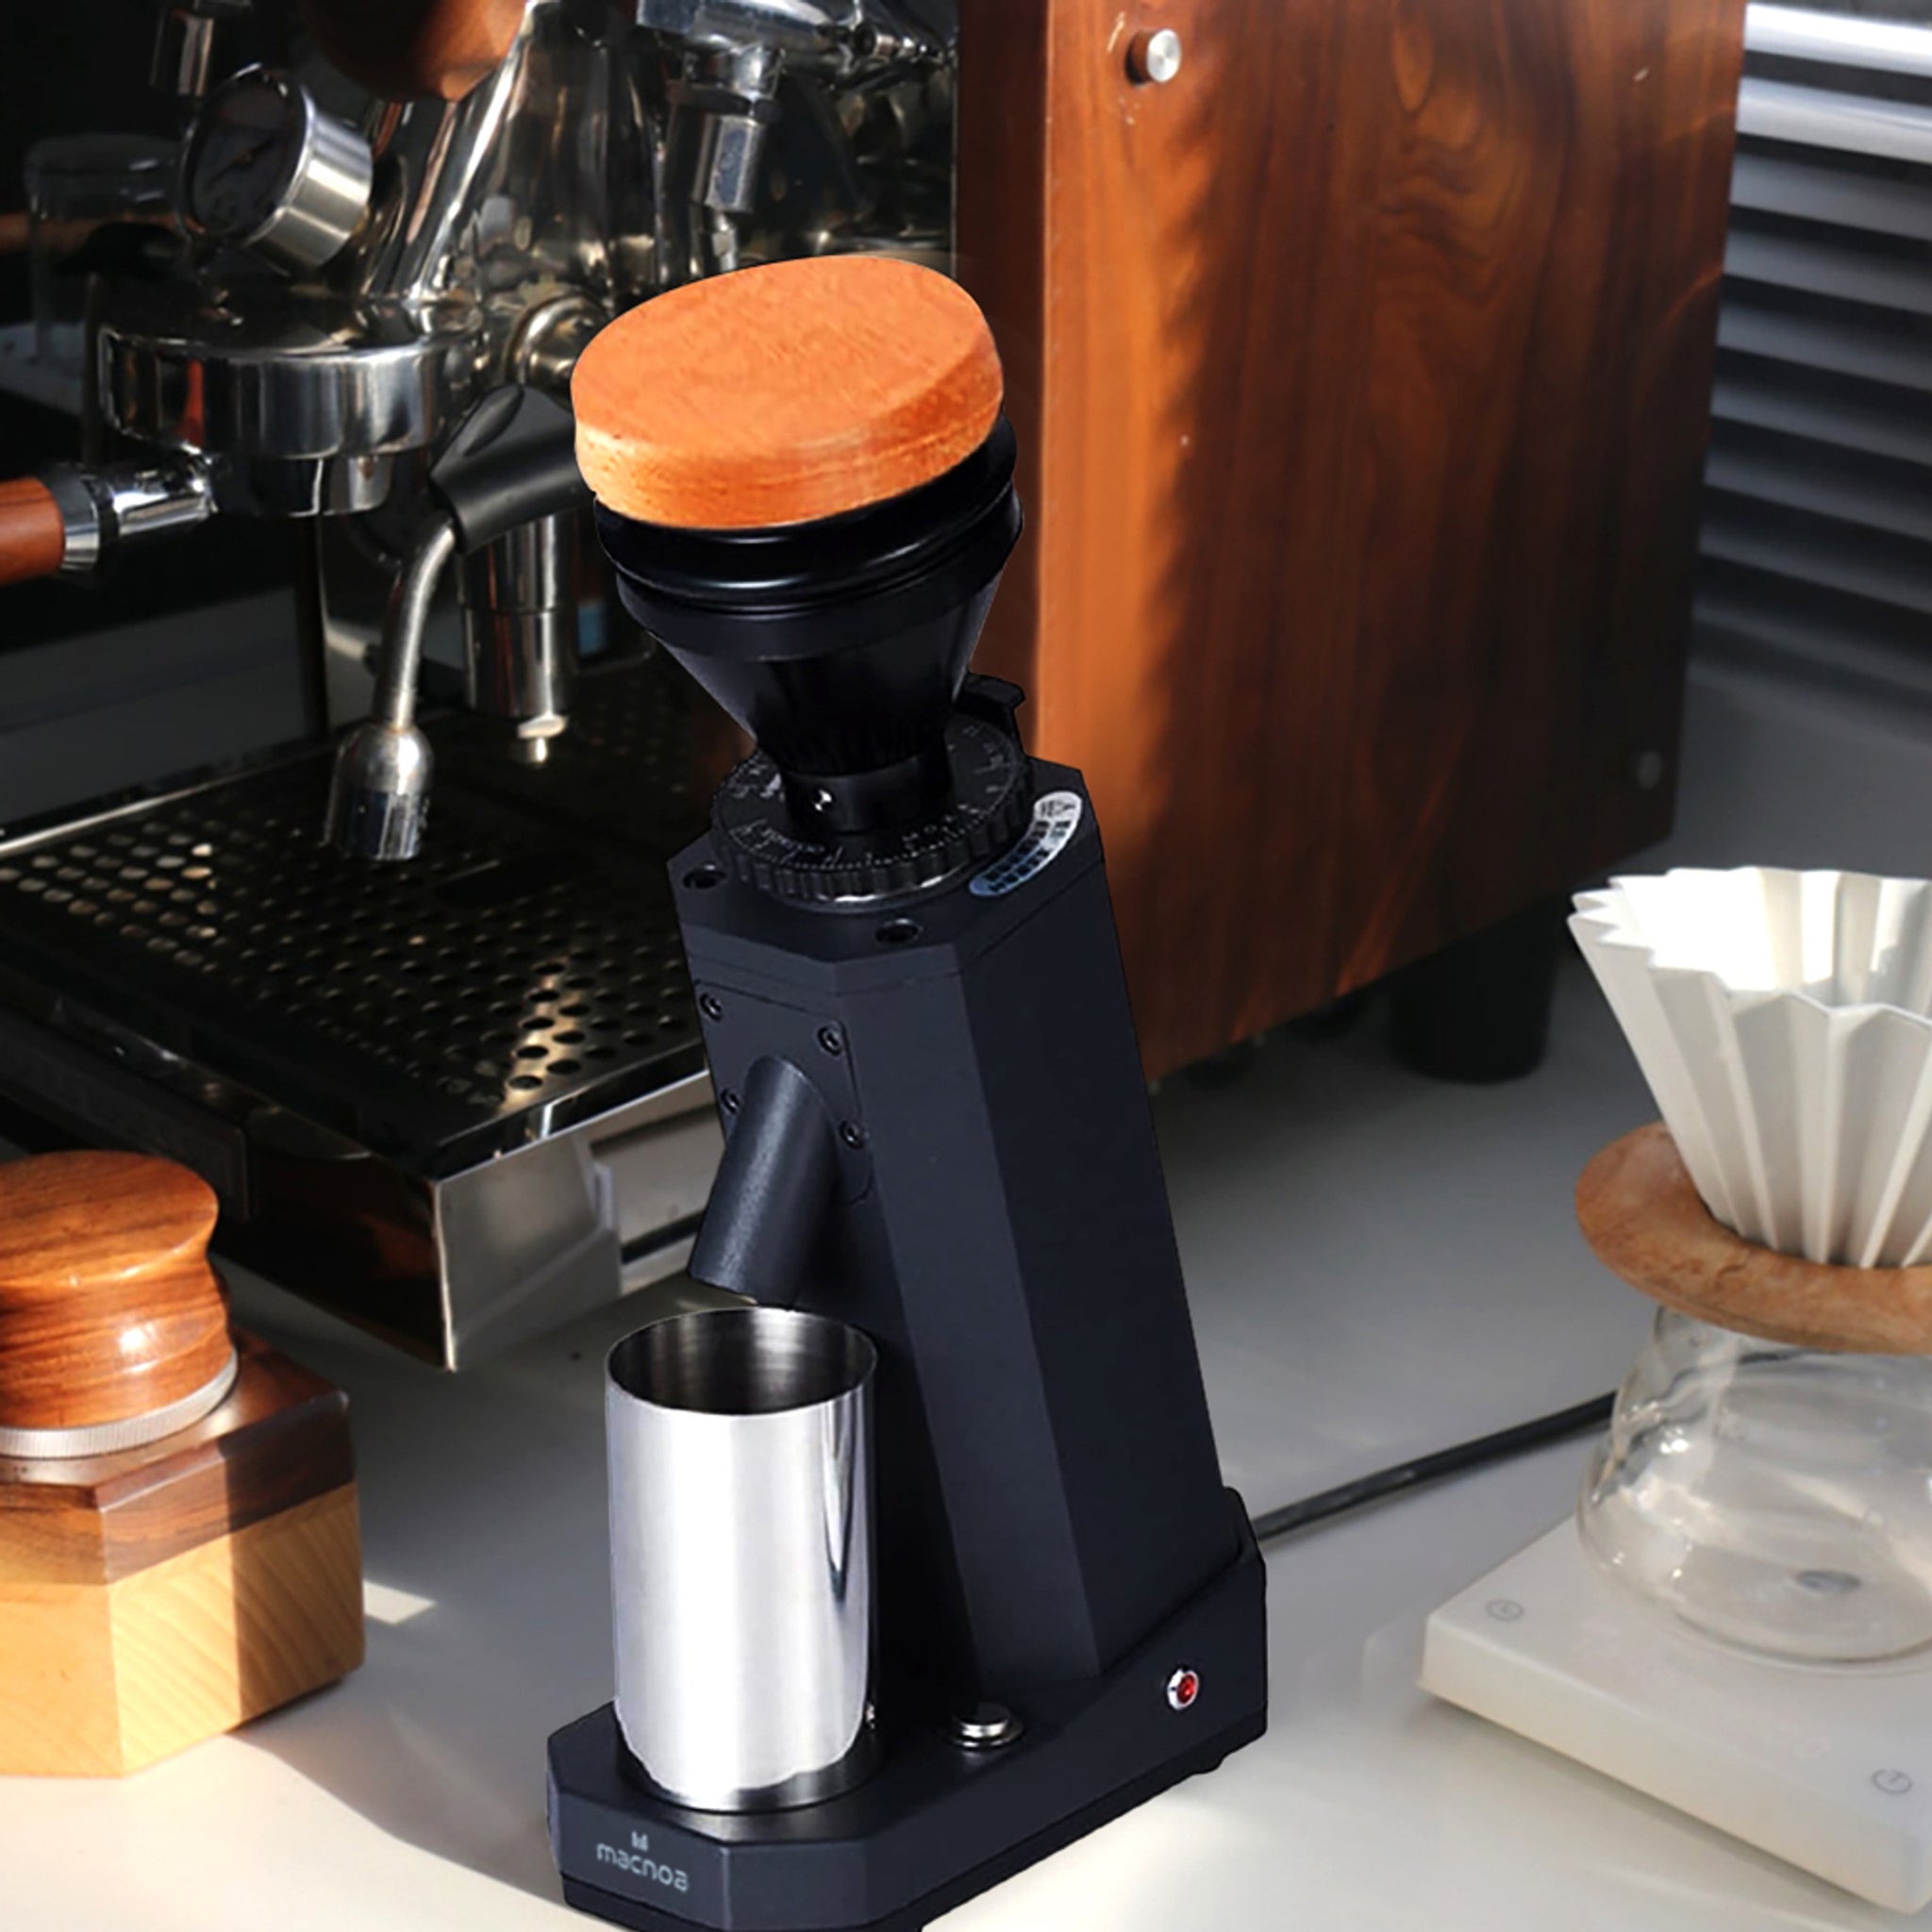 مطحنة قهوة عالية الجودة من ماكنوا / تدعم تغيير درجة الخشونة